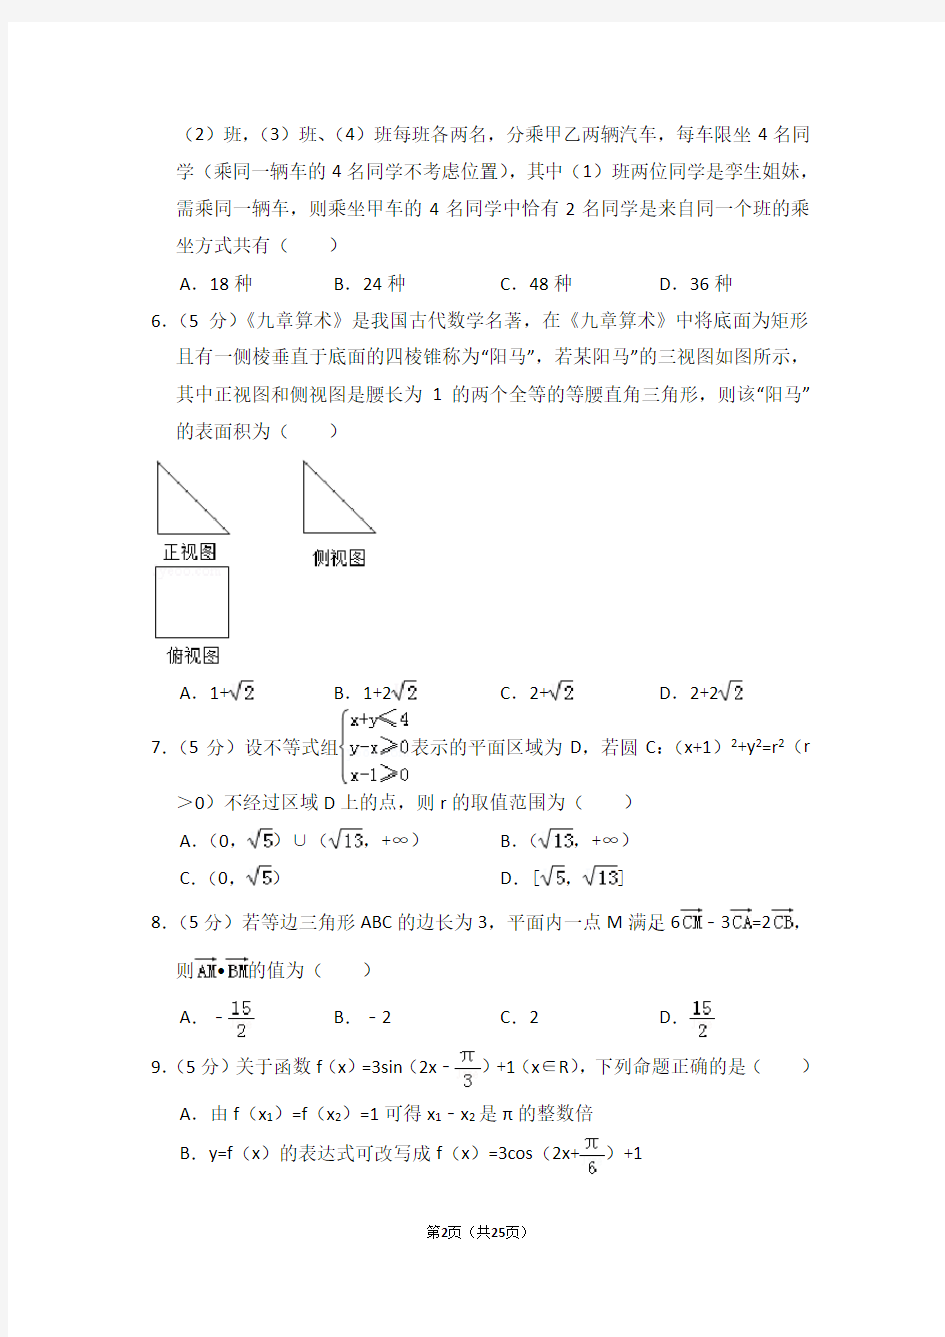 (完整版)2018年河南省高考数学一模试卷(理科)